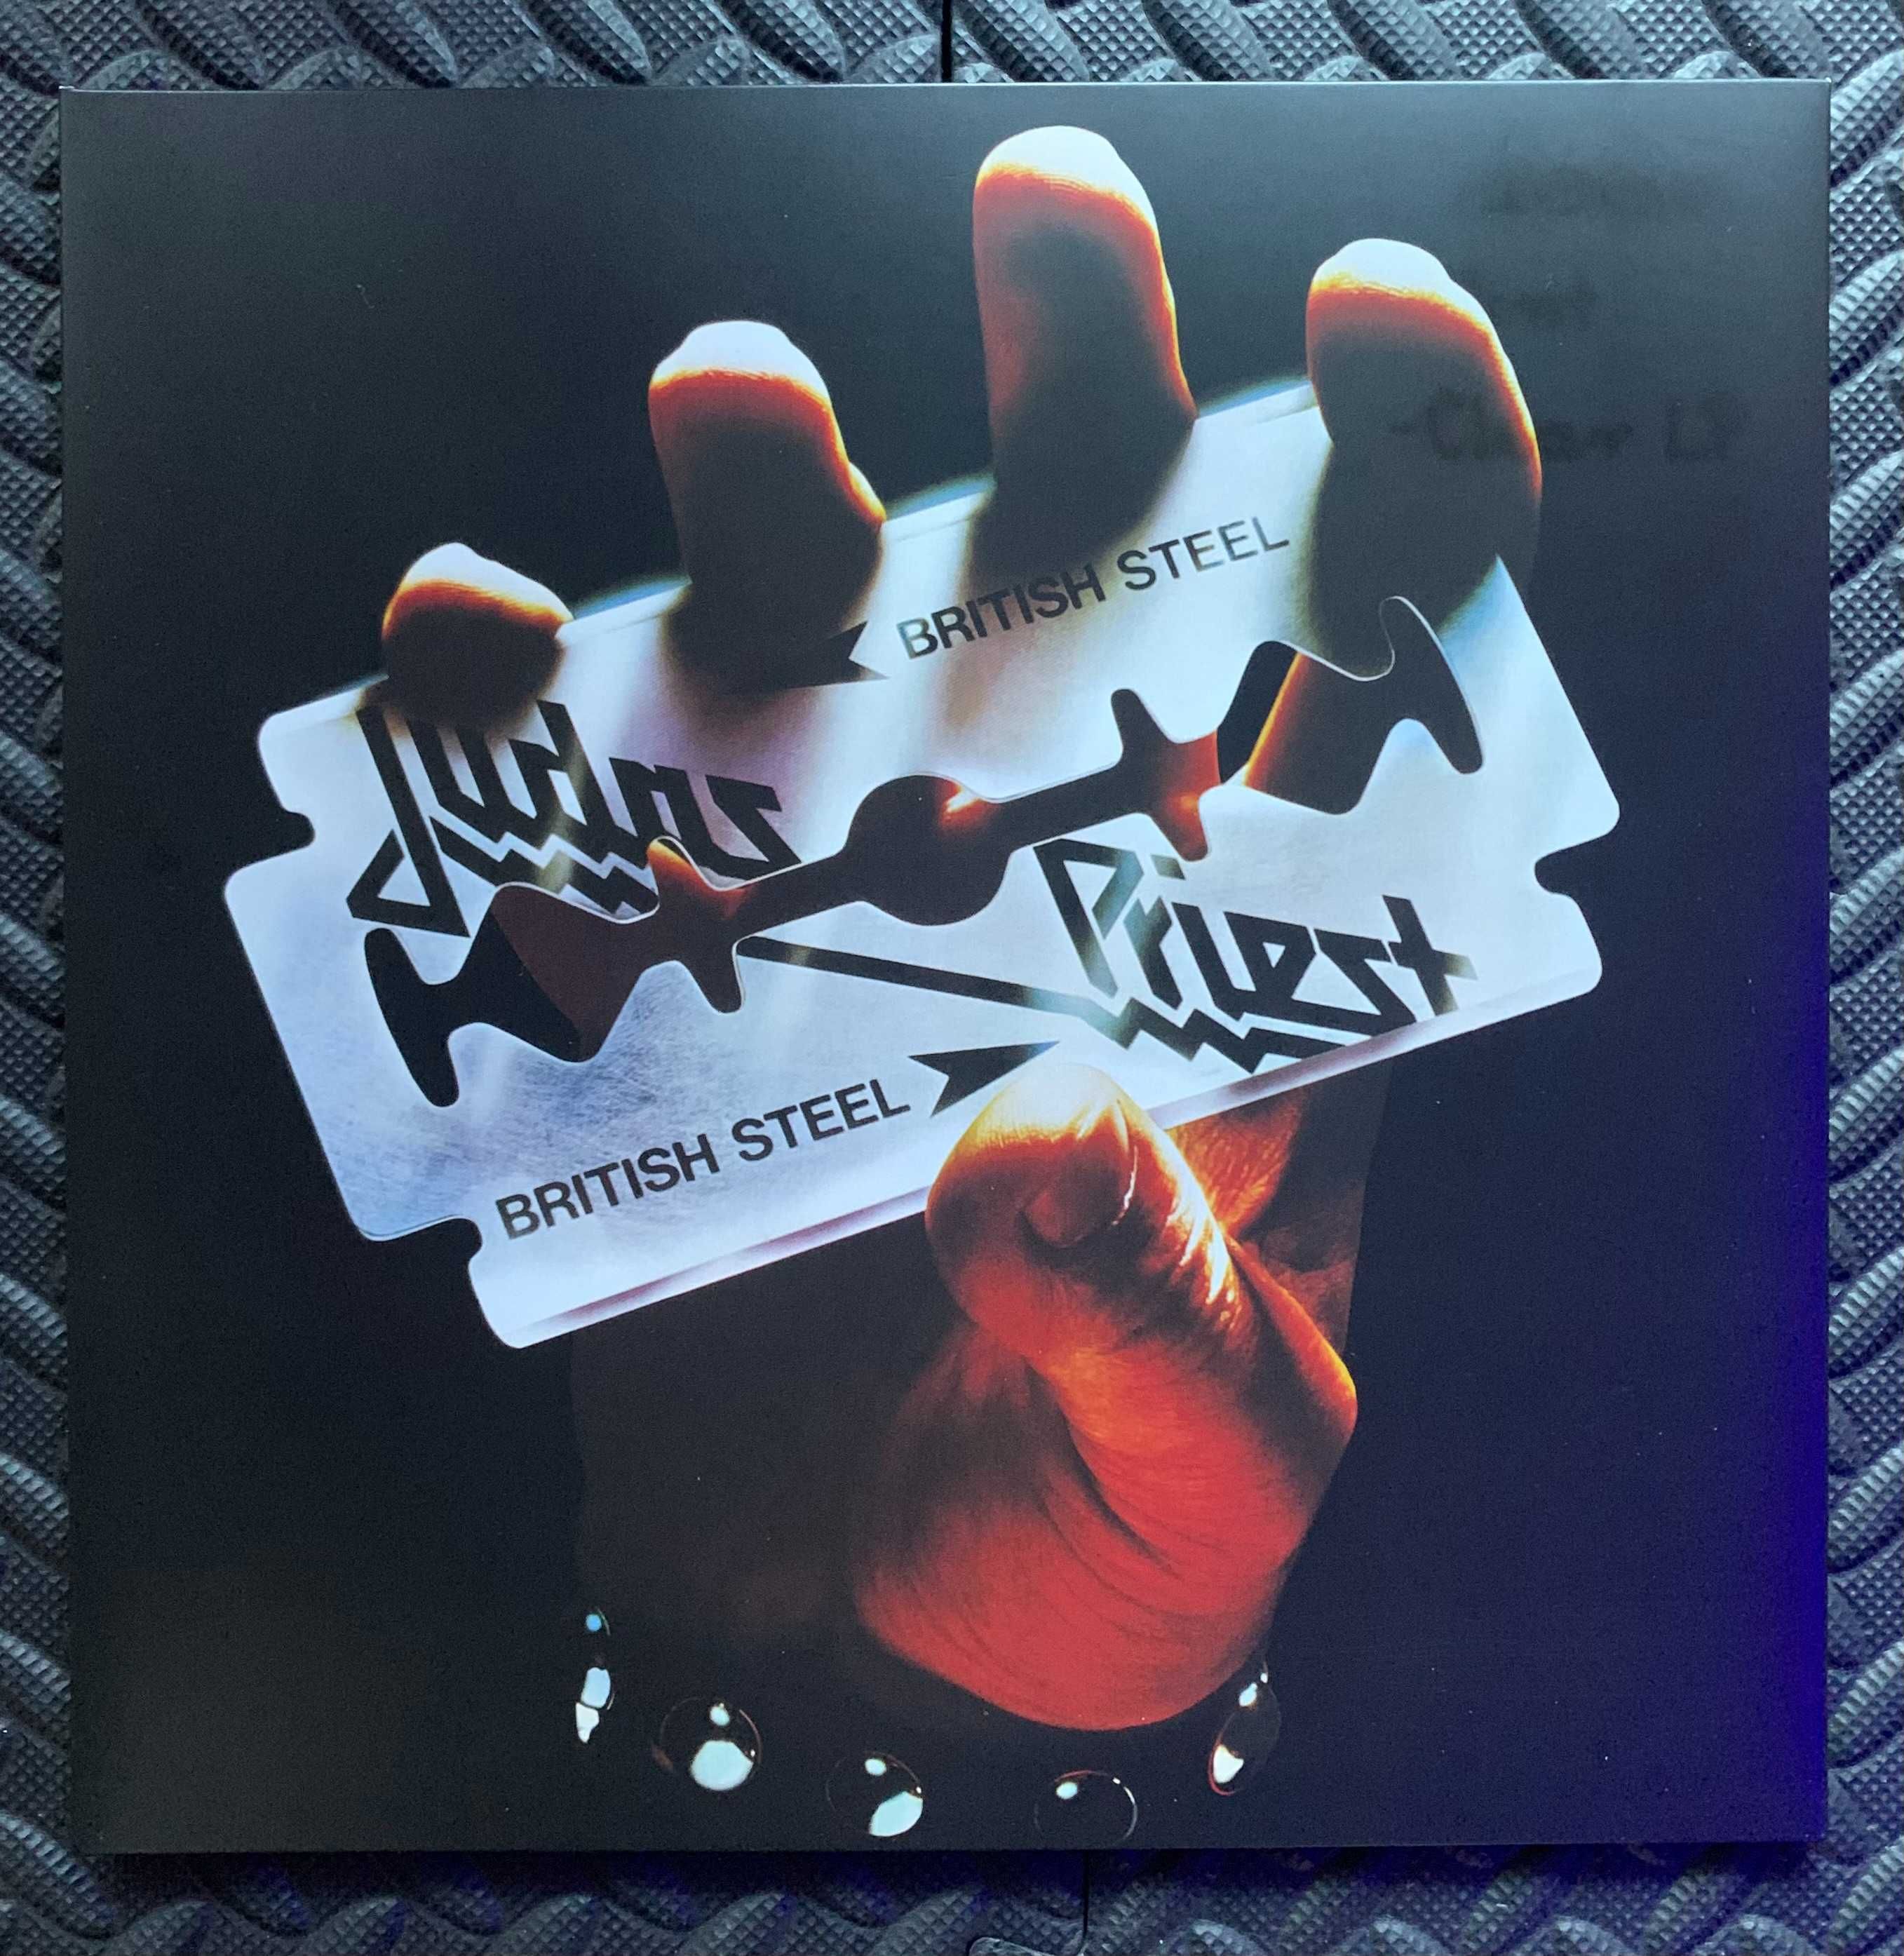 Judas Priest ‎– British Steel, clear